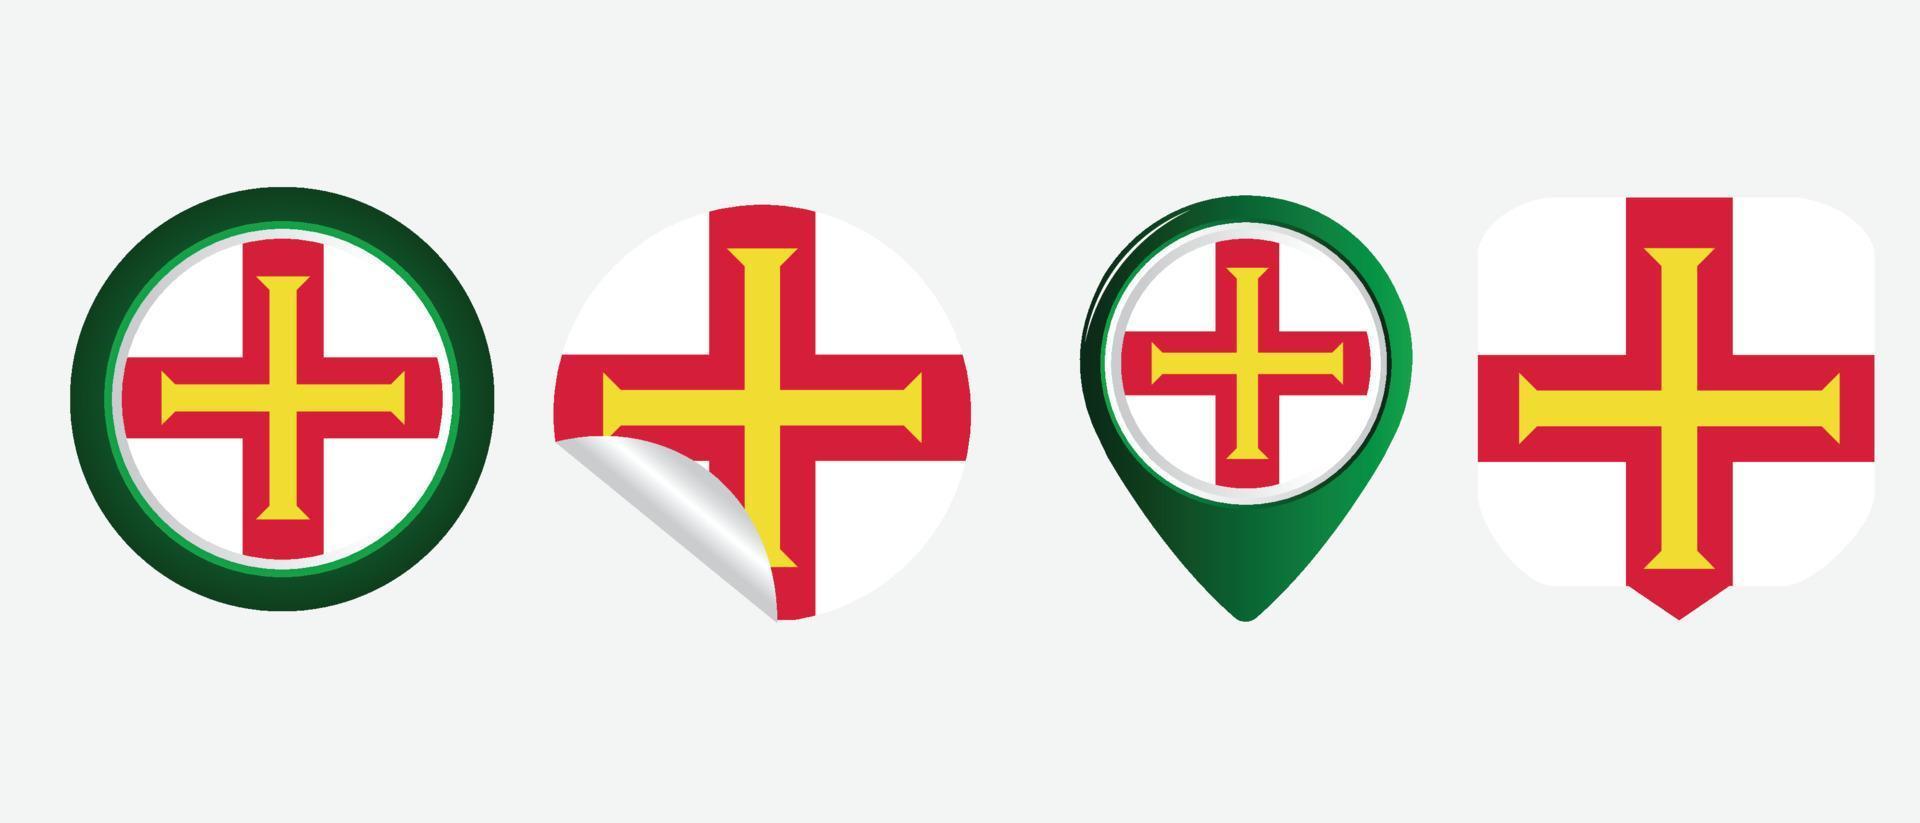 bandiera di Guernsey. icona piatta simbolo illustrazione vettoriale